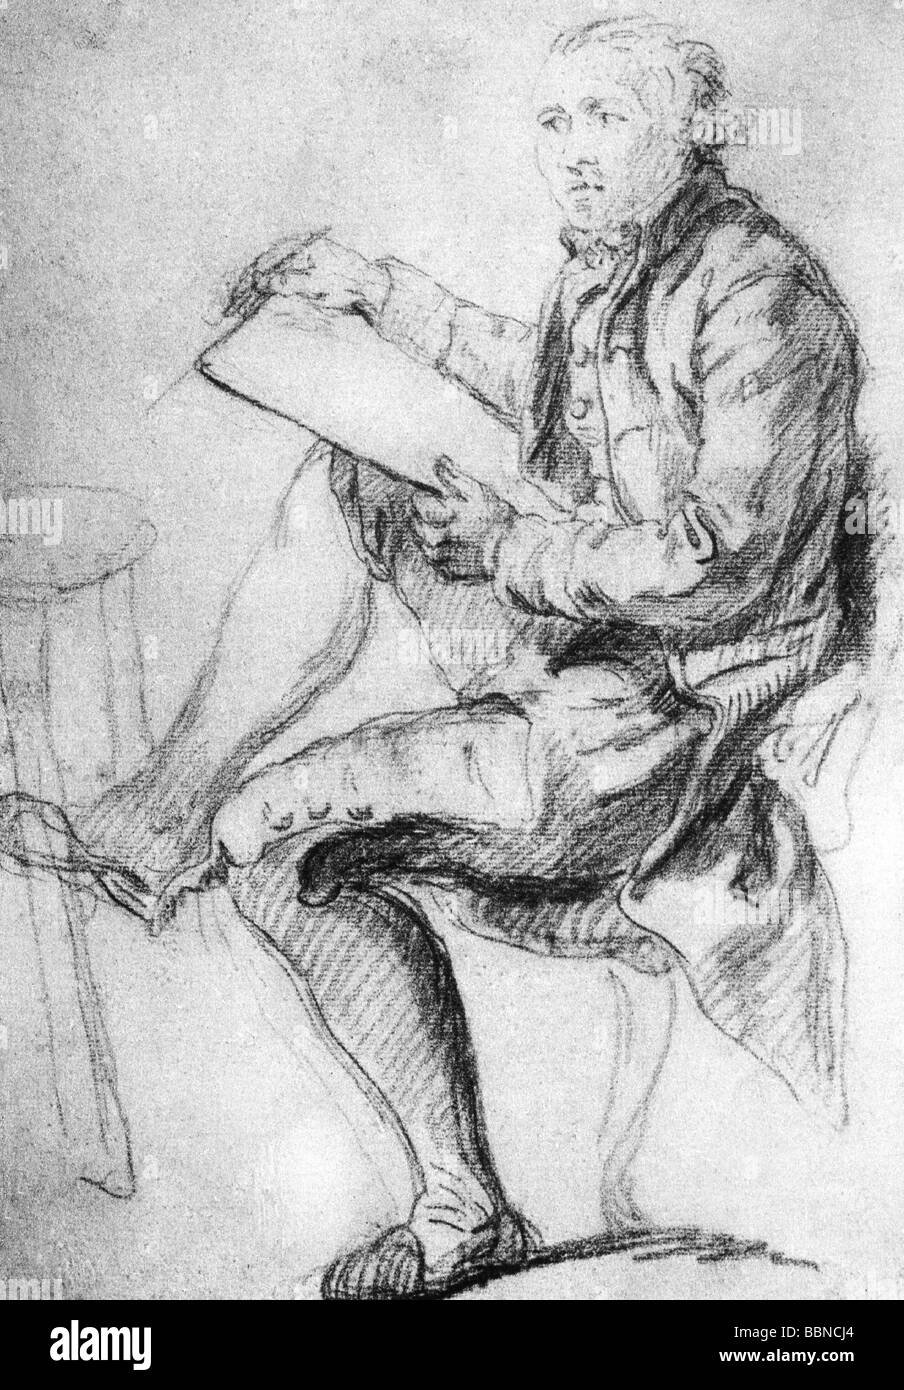 Greuze, Jean Baptiste, 21.8.1725 - 21.3.1805, peintre et sculpteur français, pleine longueur avec livre d'esquisse, autoportrait, sanguine, 40 x 27,3 cm, Musée Conde, Banque D'Images